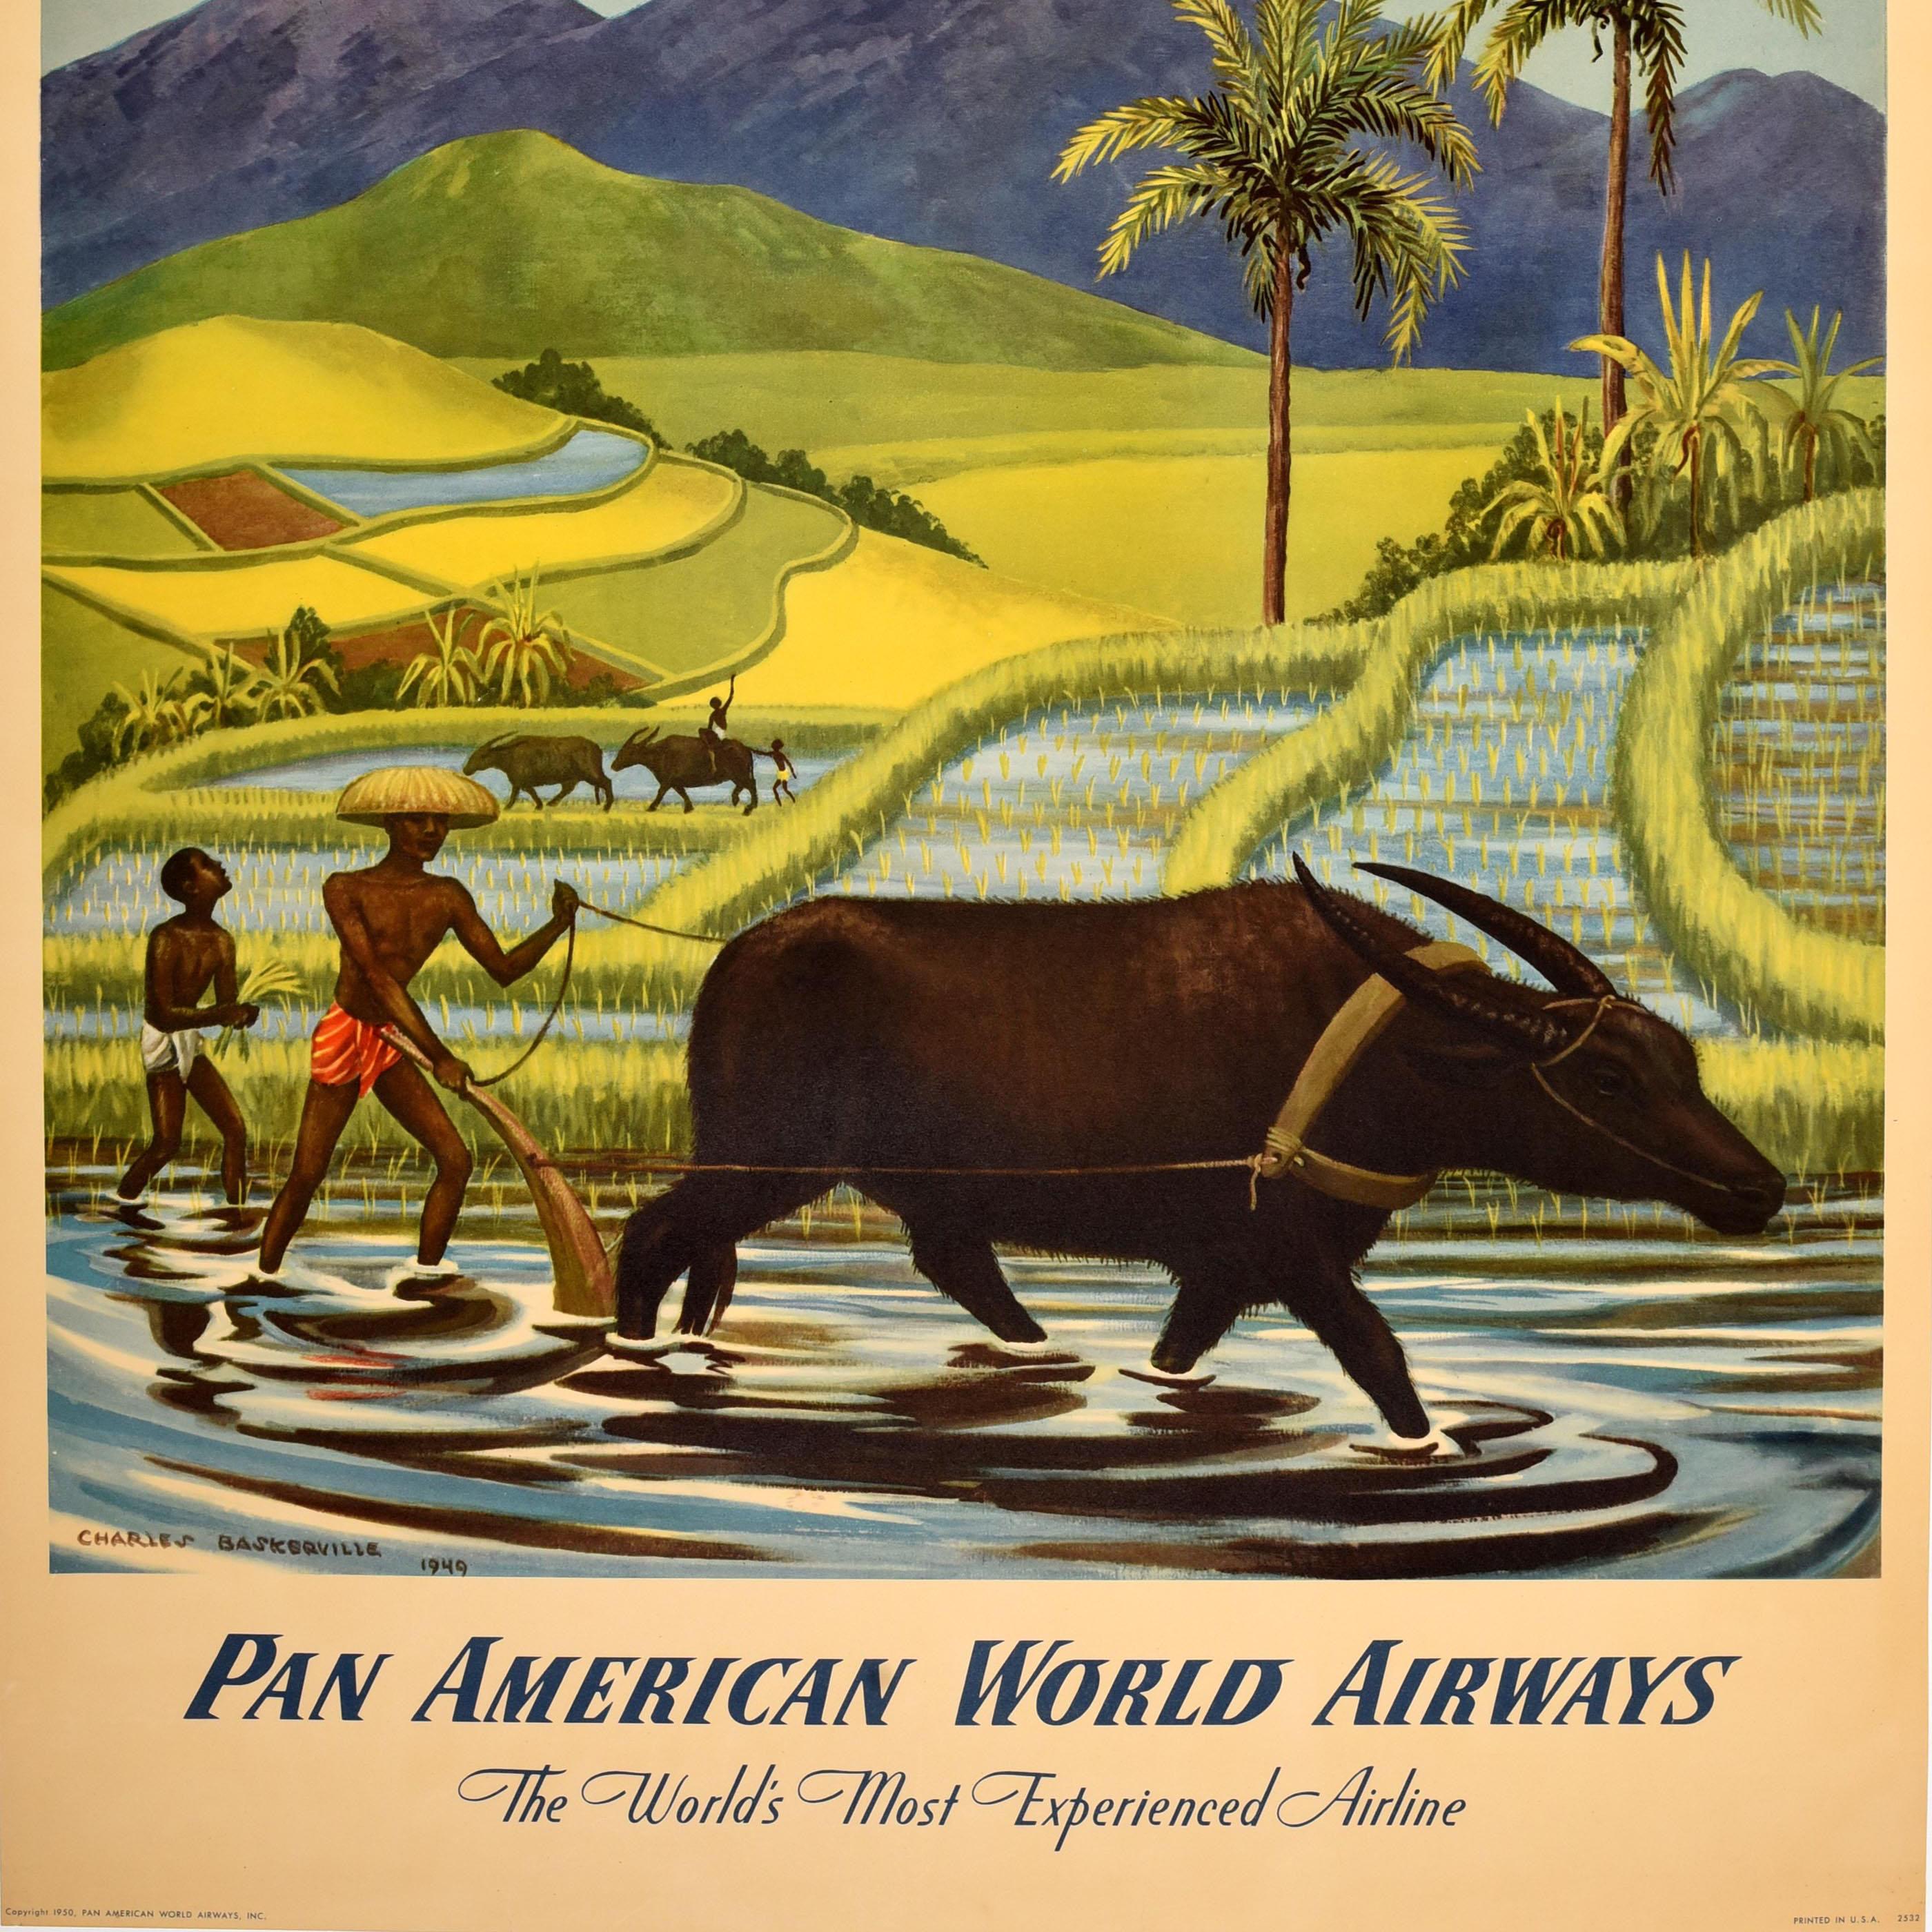 Original Vintage Asien Reiseplakat für The Orient by Clipper Pan American World Airways The World's Most Experienced Airline mit Kunstwerken von Charles Baskerville (1896-1994), die Männer bei der Arbeit auf den Reisfeldern mit Hilfe von